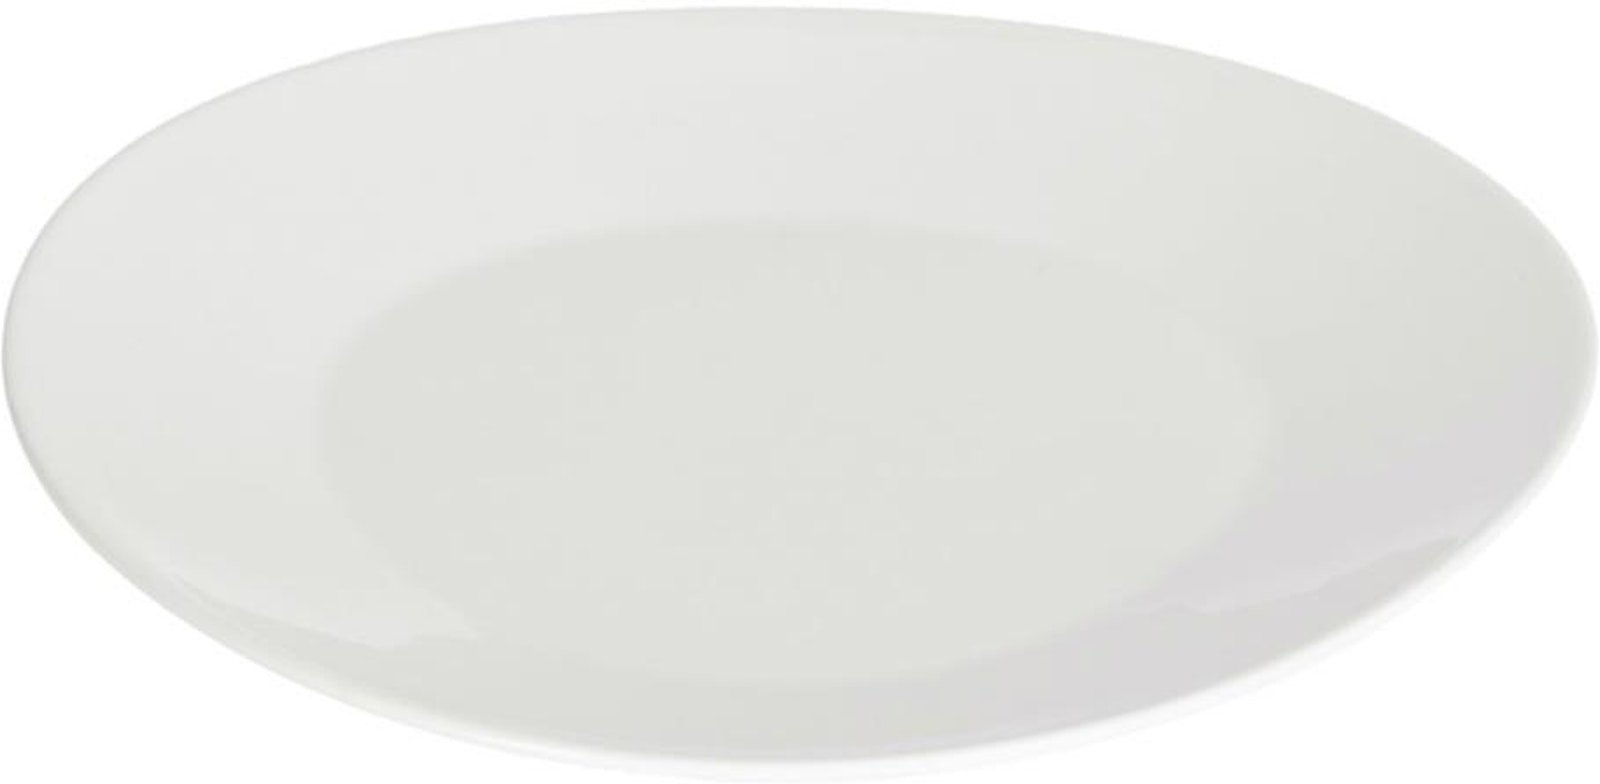 LAFORMA Pierina desserttallerken - hvid porcelæn (Ø21,5)